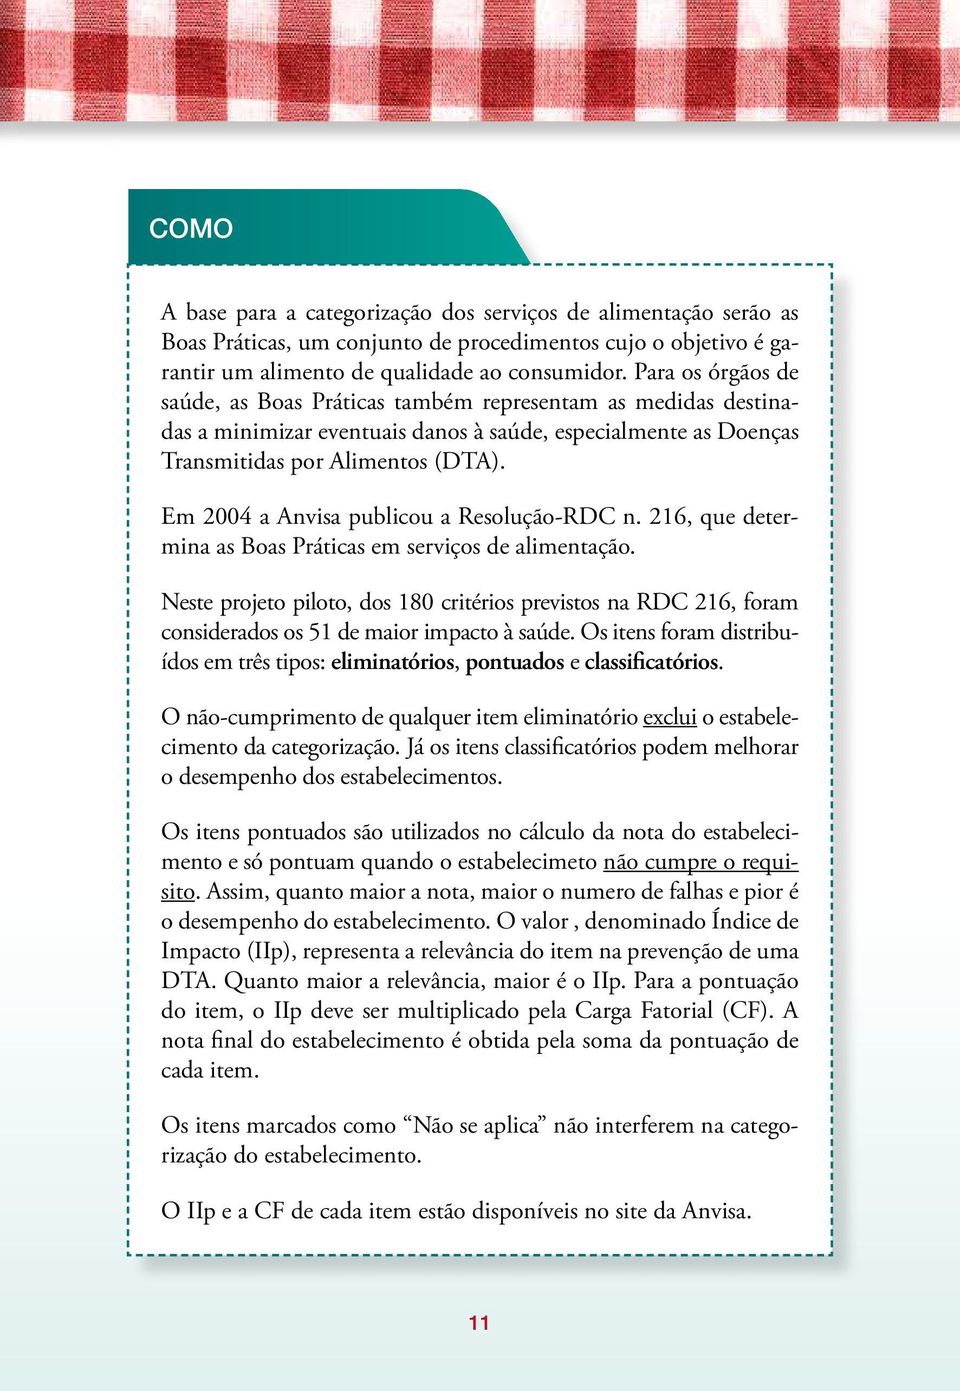 Em 2004 a Anvisa publicou a Resolução-RDC n. 216, que determina as Boas Práticas em serviços de alimentação.